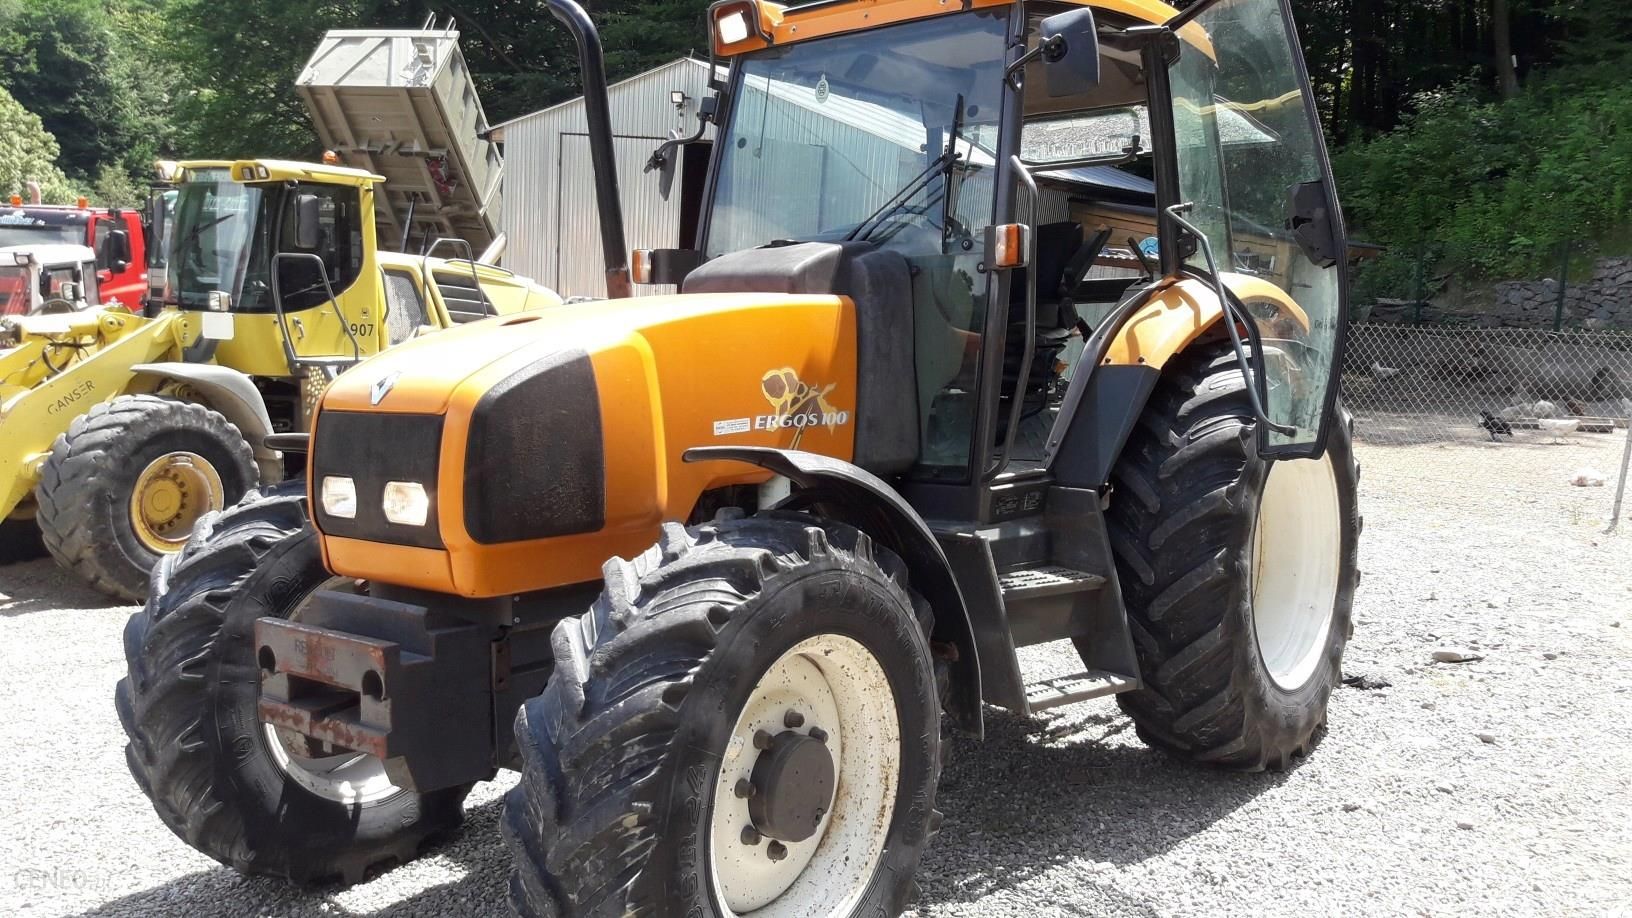 Traktor Ciągnik Rolniczy Renault Ergos 100 - Opinie I Ceny Na Ceneo.pl